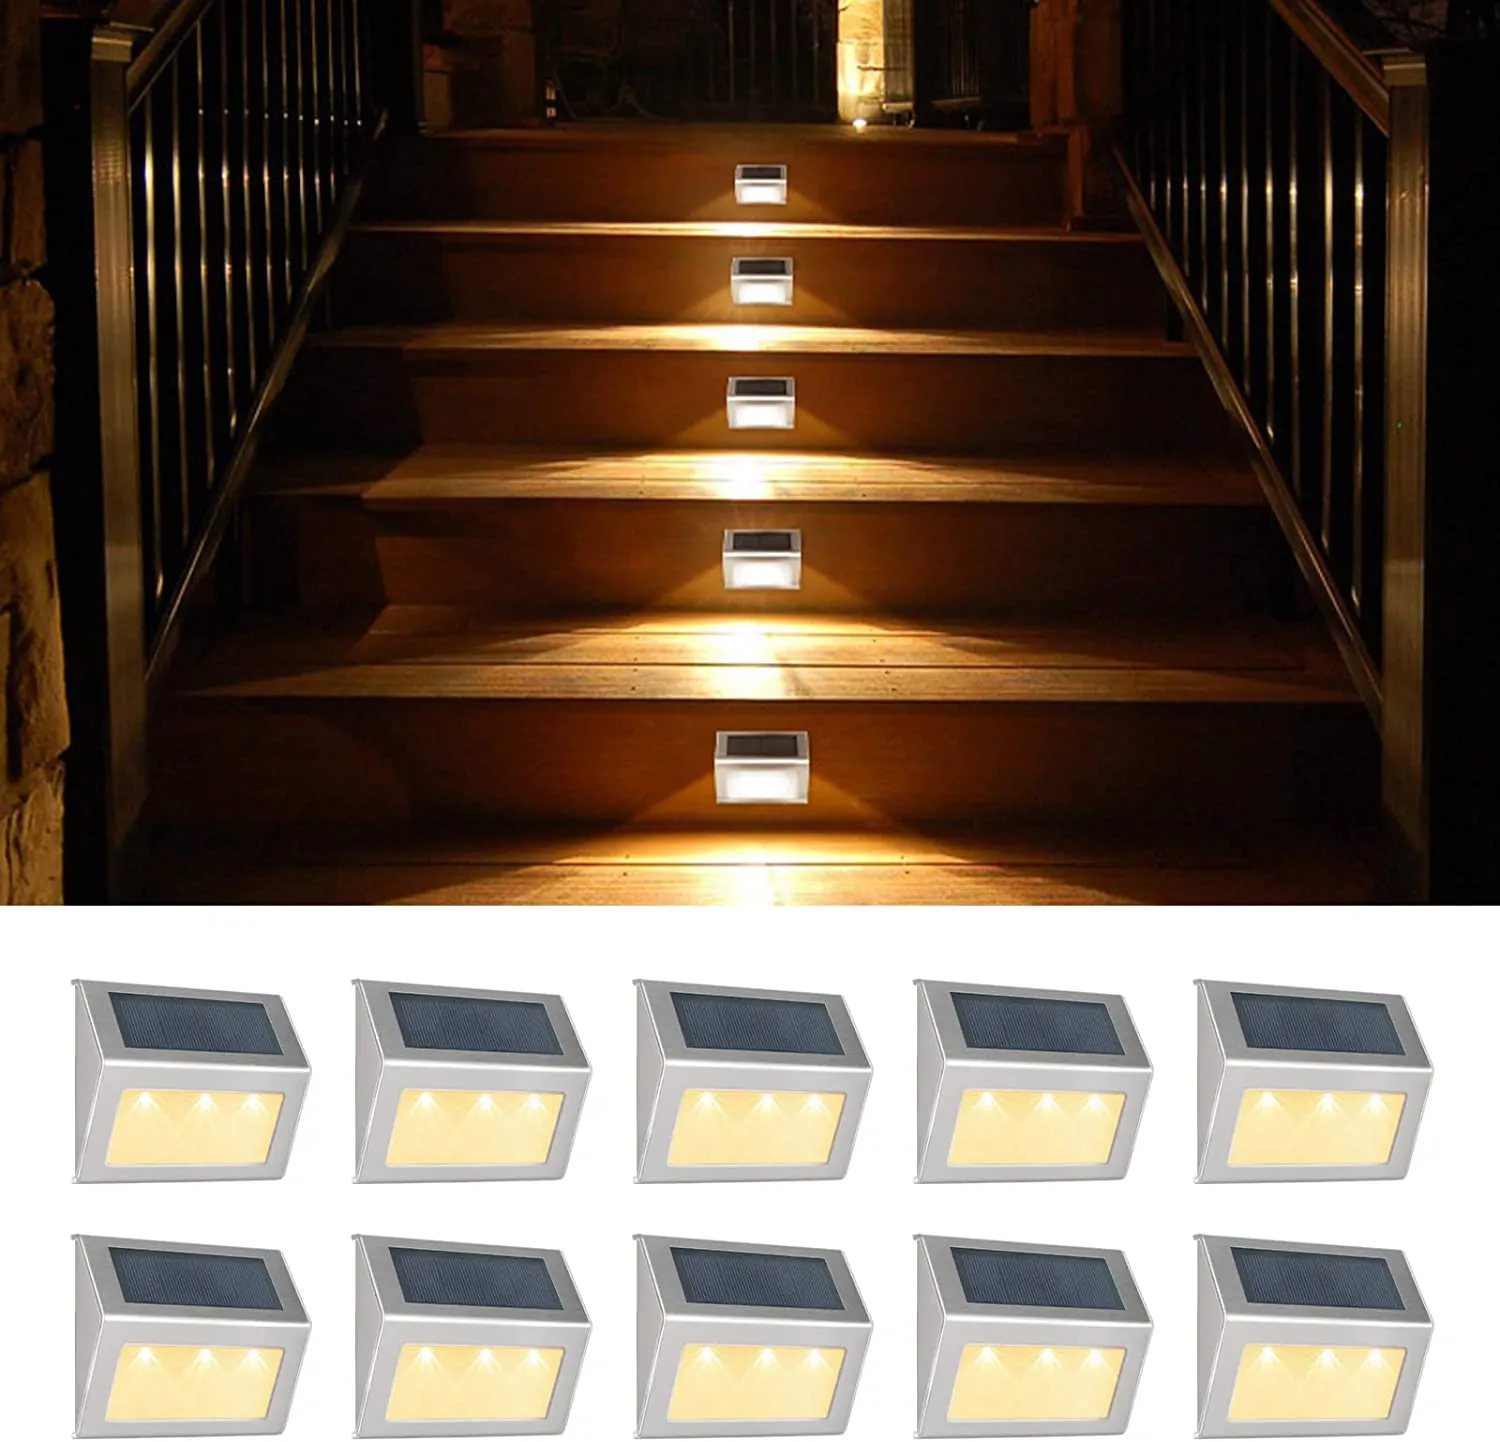 Güneş lambaları 6pcs Açık Güneş Güverte Işıkları Paslanmaz Çelik Bahçe Yol Yüzde Merdivenler Lamba 3leds Duvar Işığı Avlular Çit Adımları